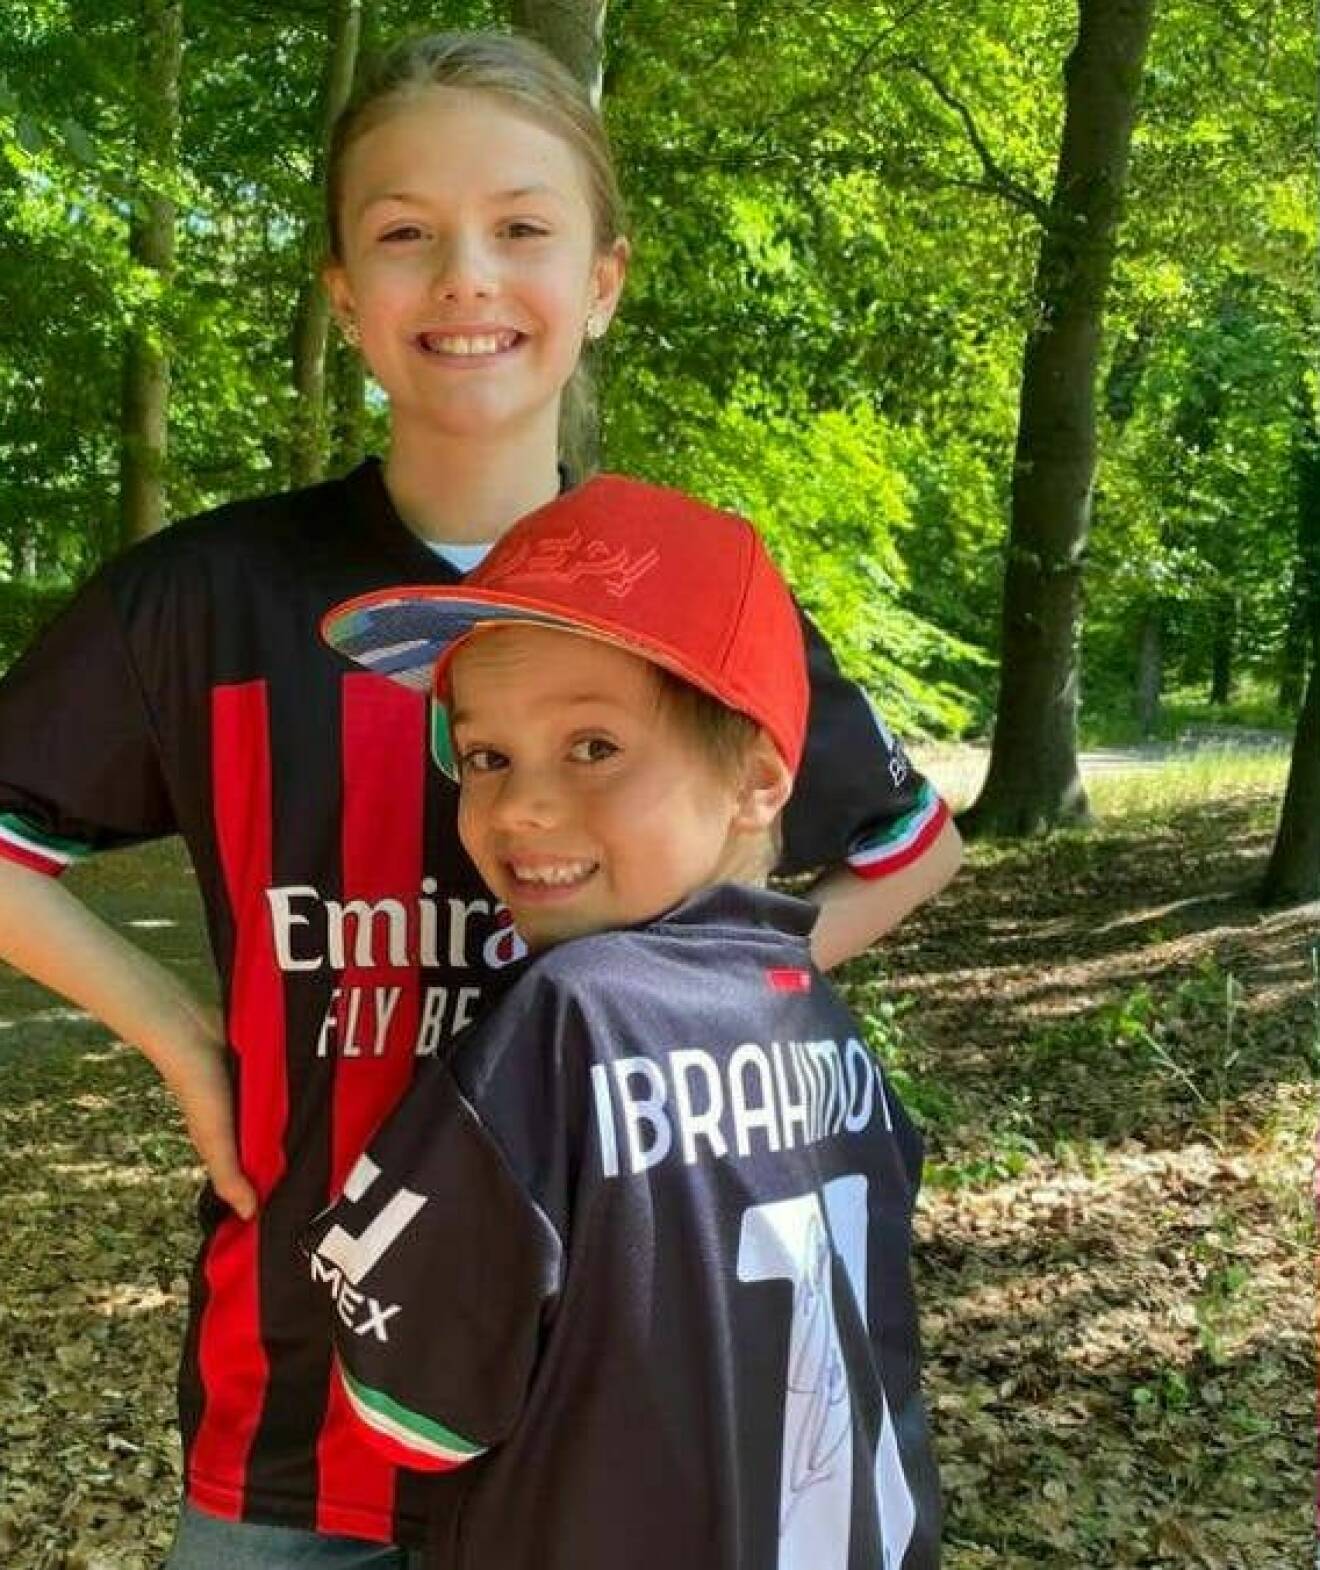 Prinsessan Estelle och prins Oscar i varsin fotbollströja med Zlatan Ibrahimovics namn på ryggen